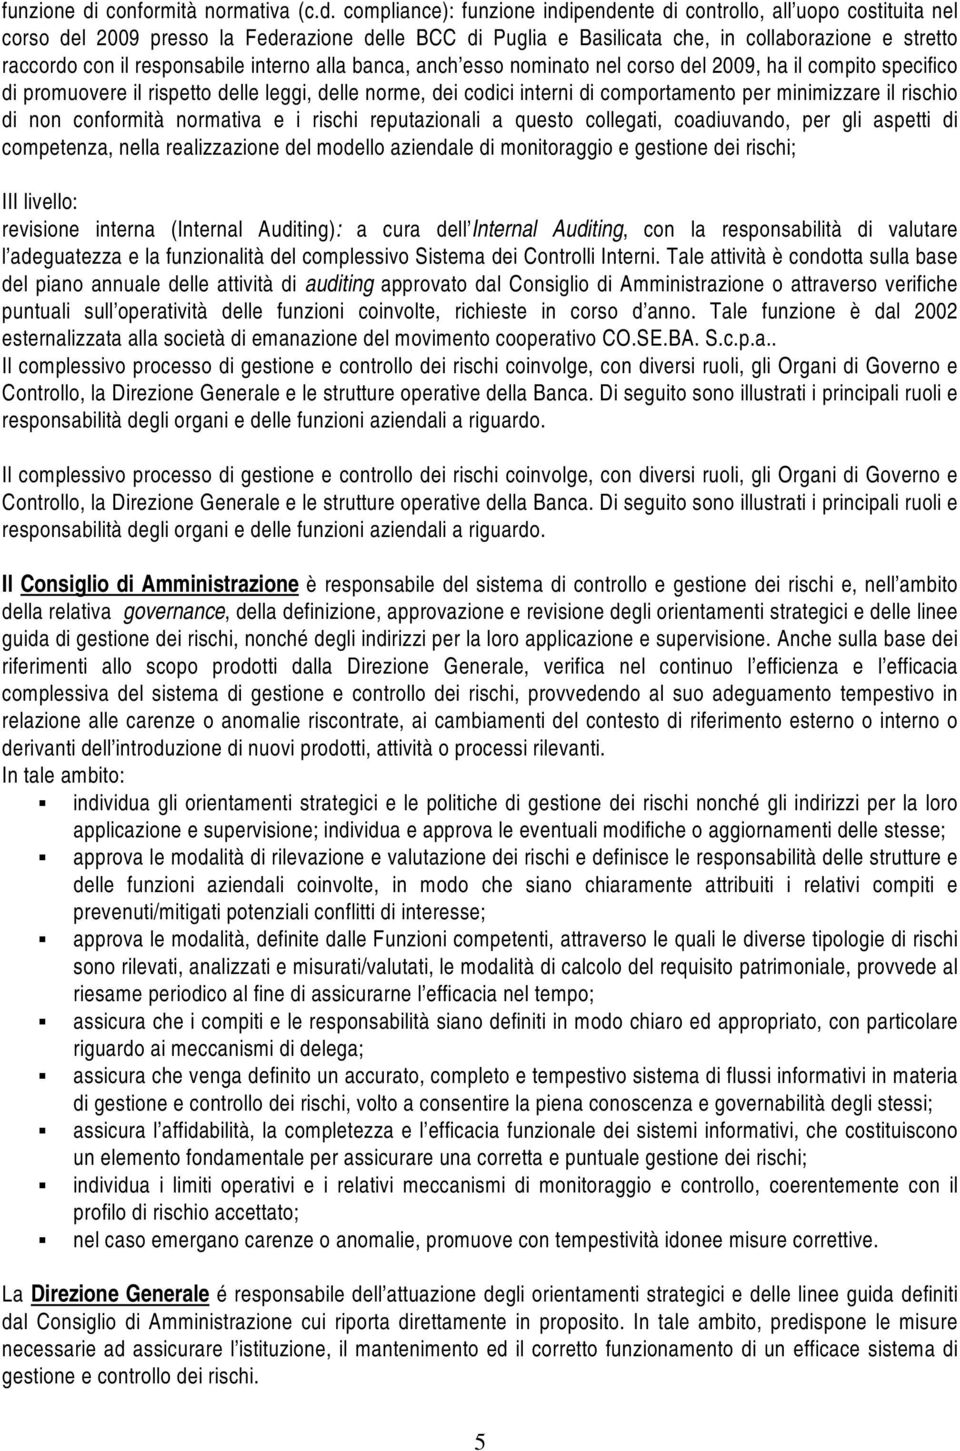 compliance): funzione indipendente di controllo, all uopo costituita nel corso del 2009 presso la Federazione delle BCC di Puglia e Basilicata che, in collaborazione e stretto raccordo con il